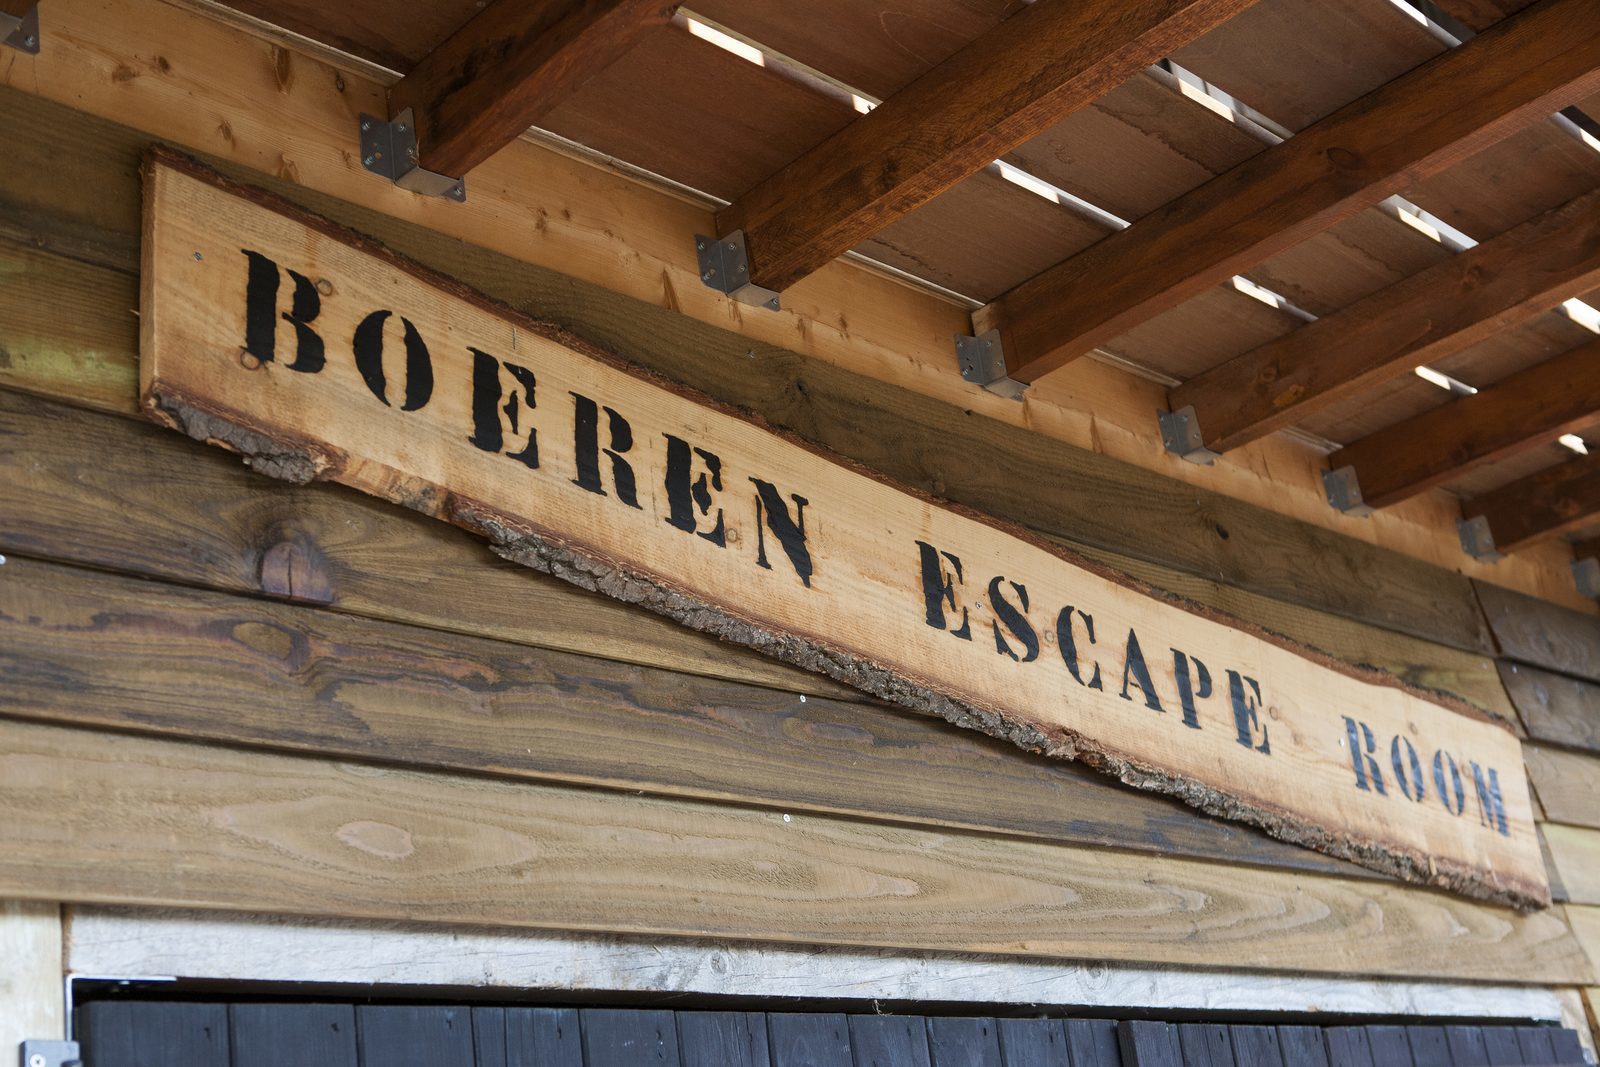 Boeren Escape room in Voorthuizen